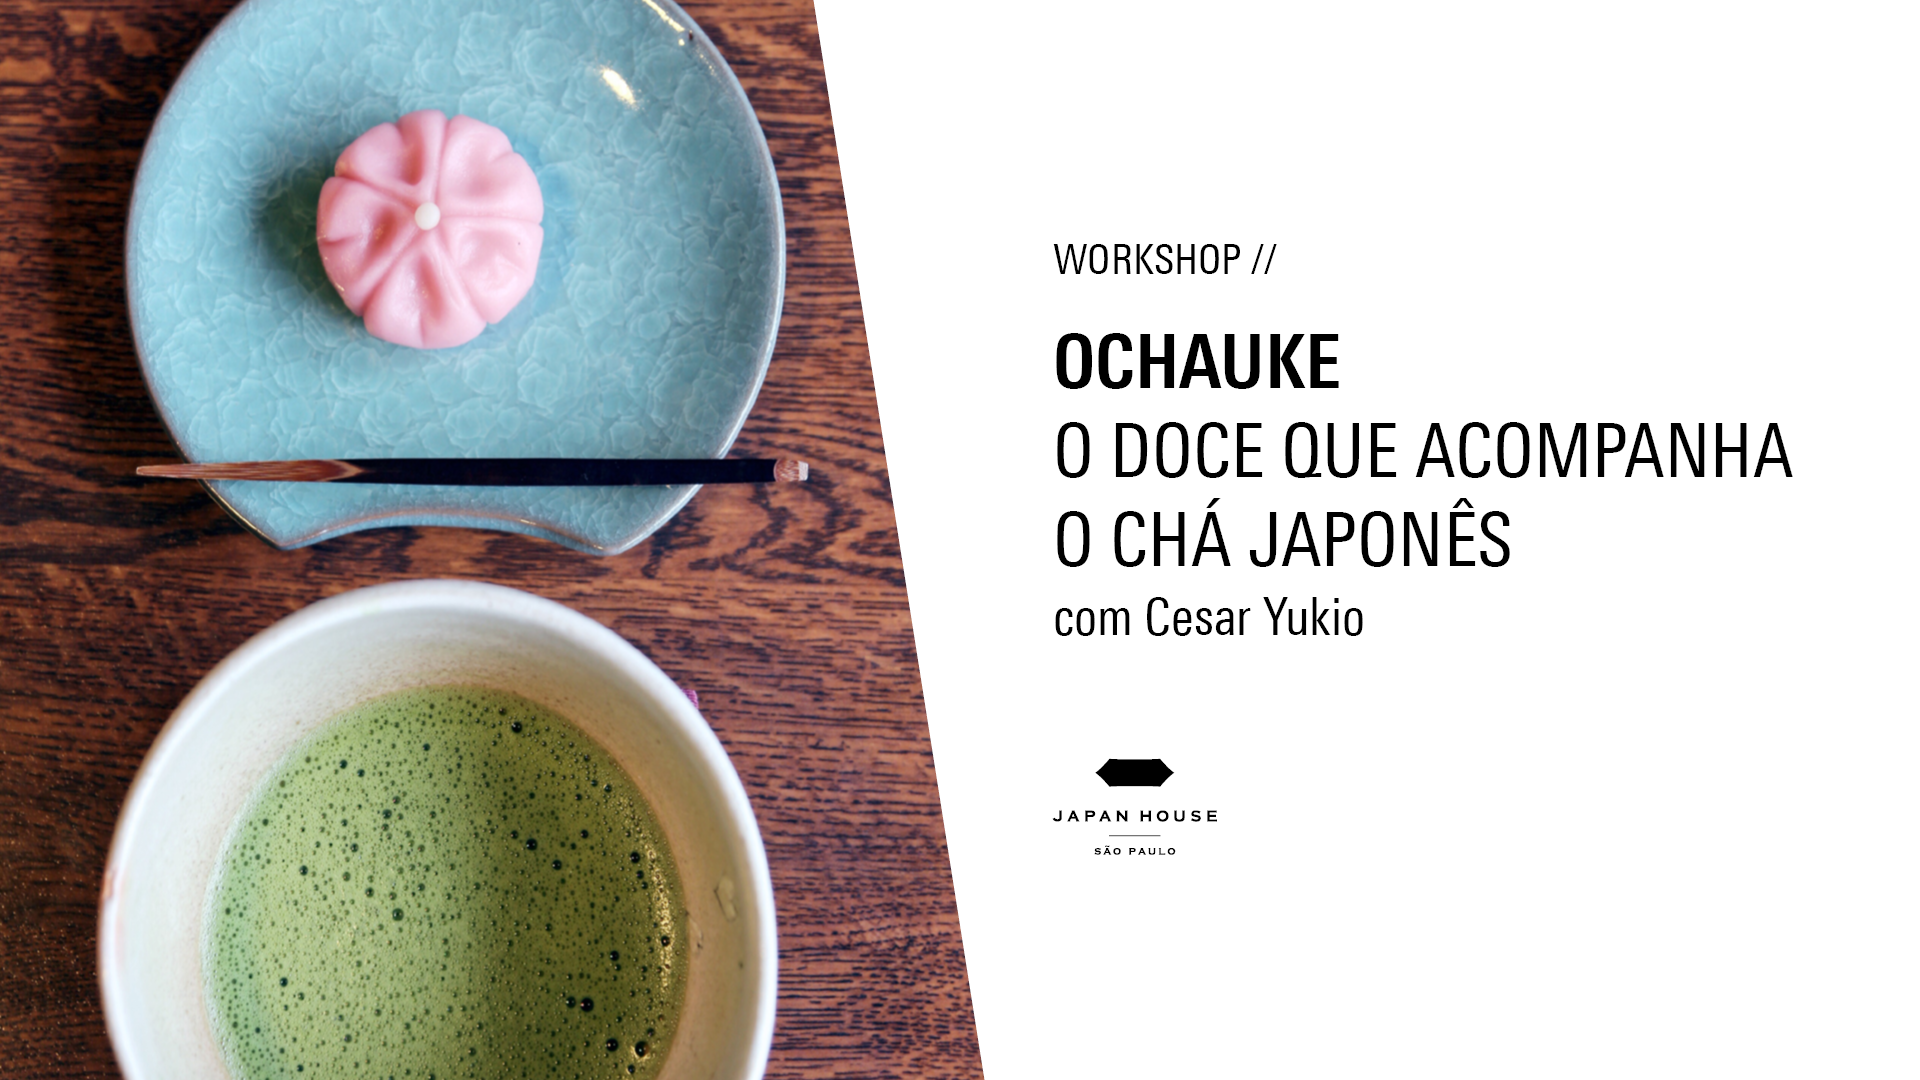 Workshop //  Ochauke - o doce que acompanha o chá japonês com Cesar Yukio  - Evento presencial   [Logo JHSP]               